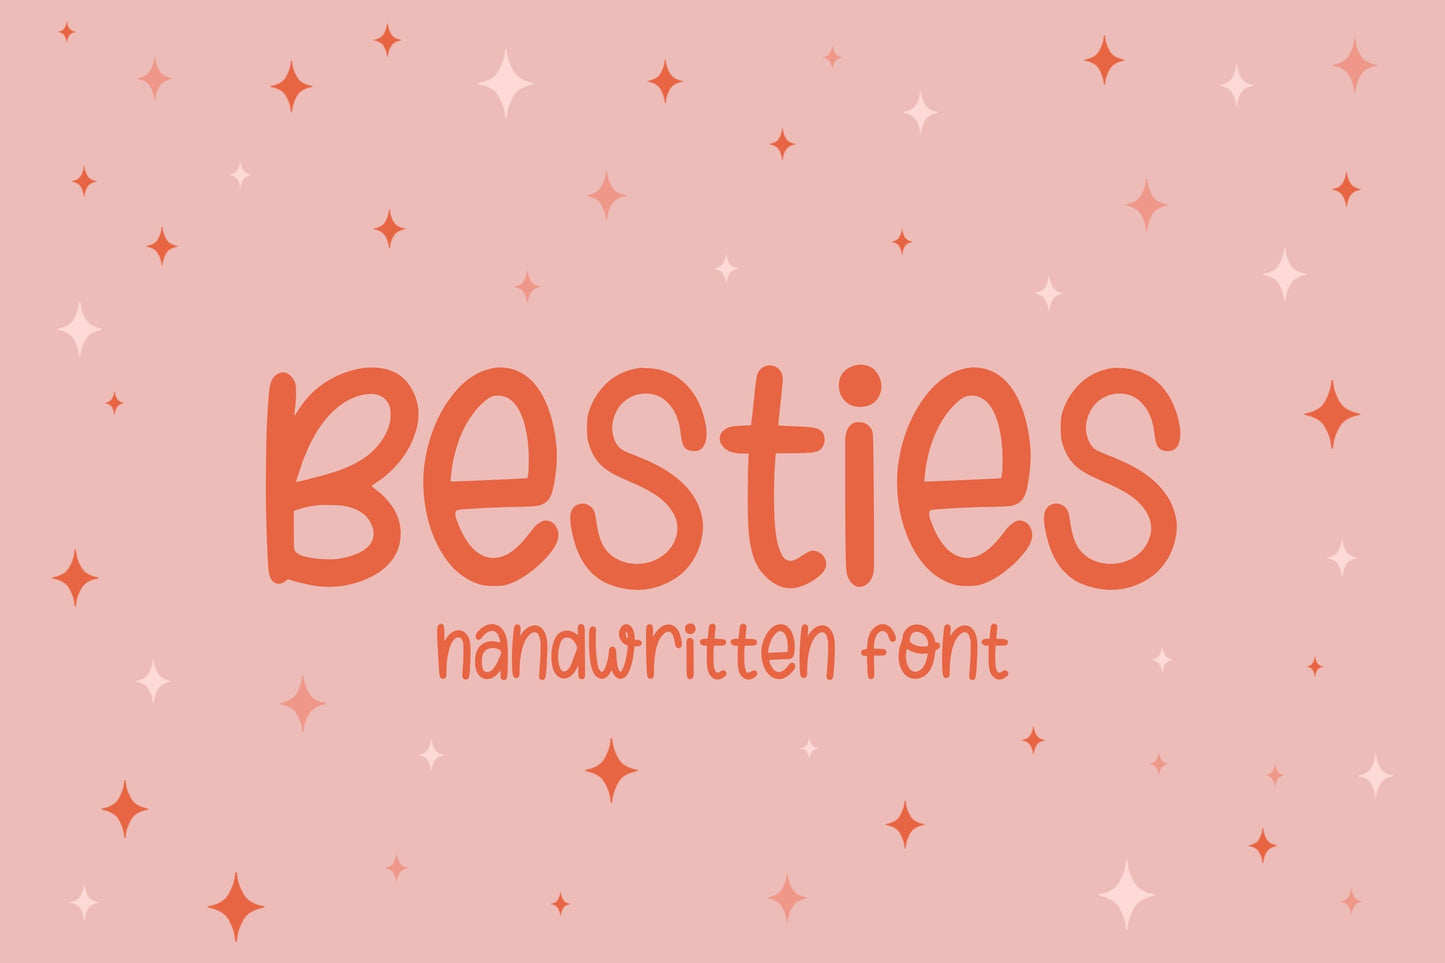 Besties Handwritten Font